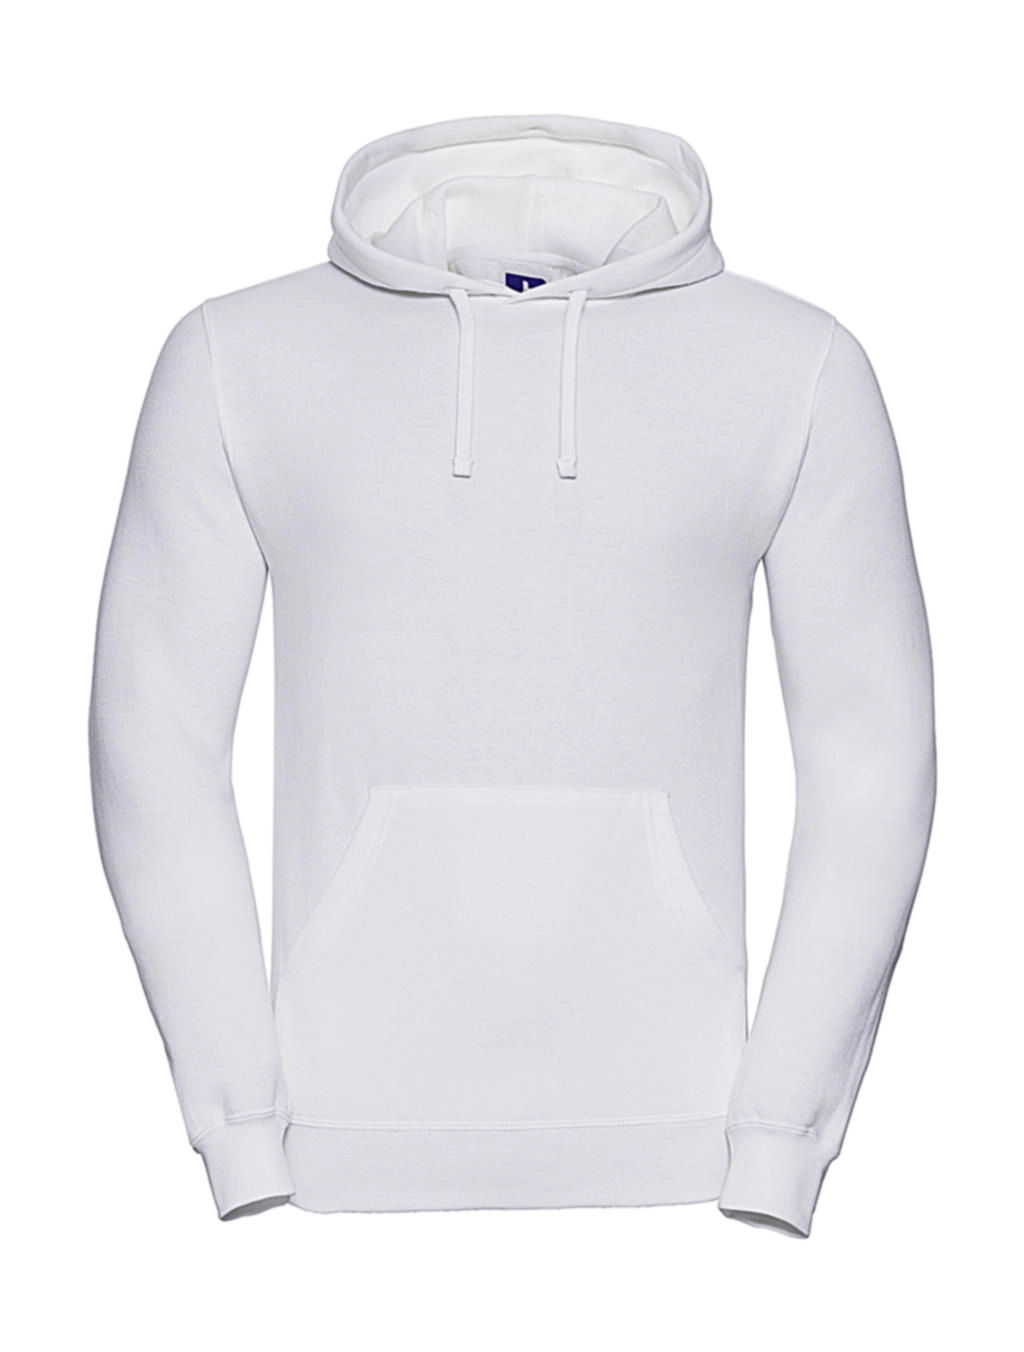 Hooded Sweatshirt zum Besticken und Bedrucken in der Farbe White mit Ihren Logo, Schriftzug oder Motiv.